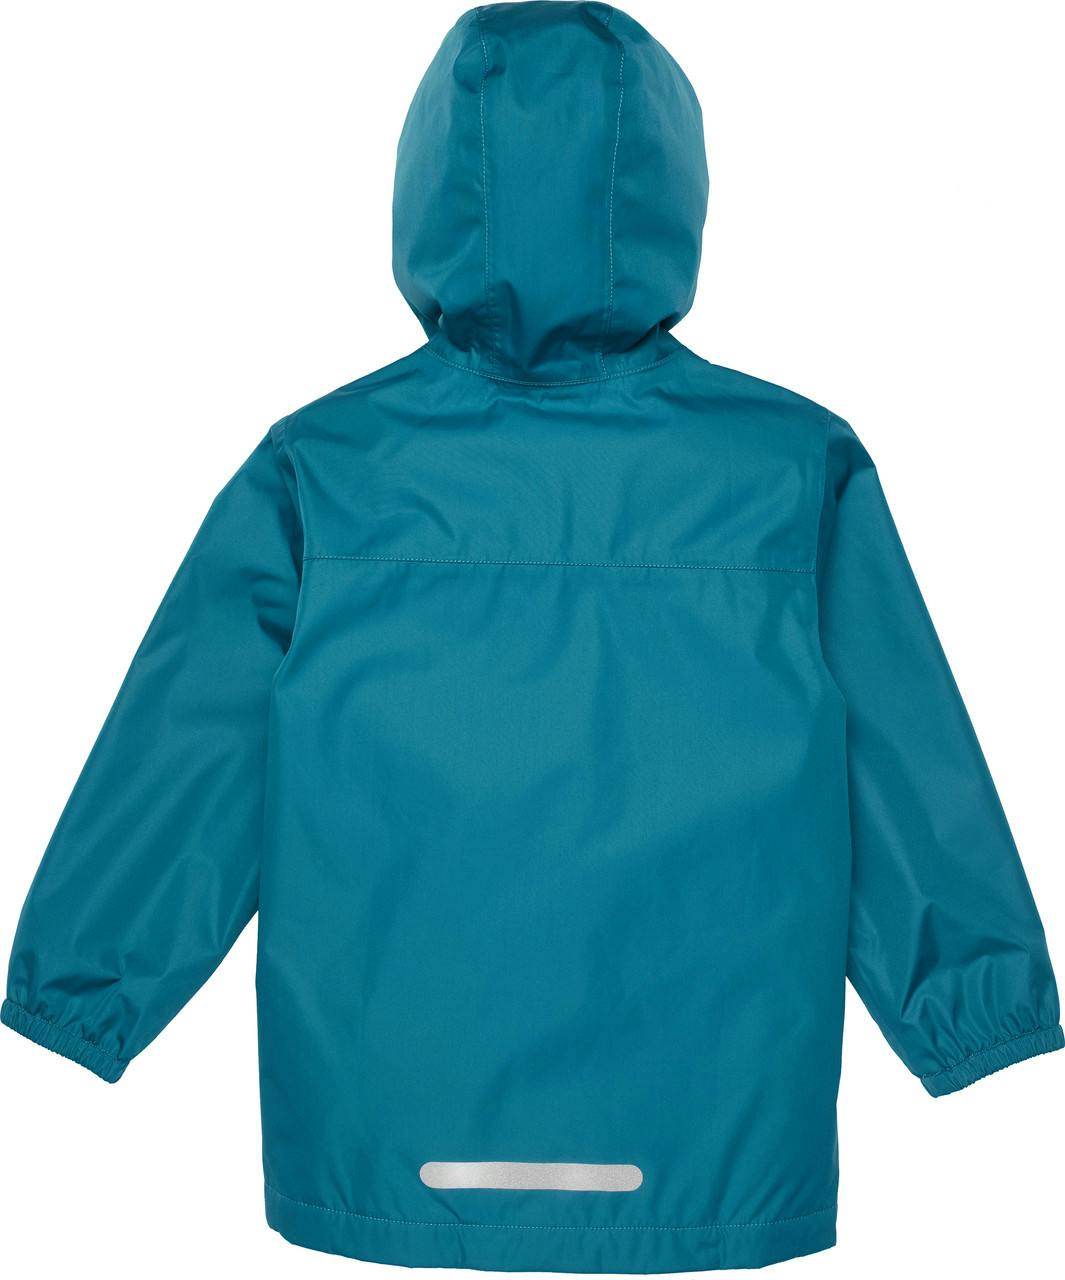 Cozy Aquanator Jacket Blue Suede